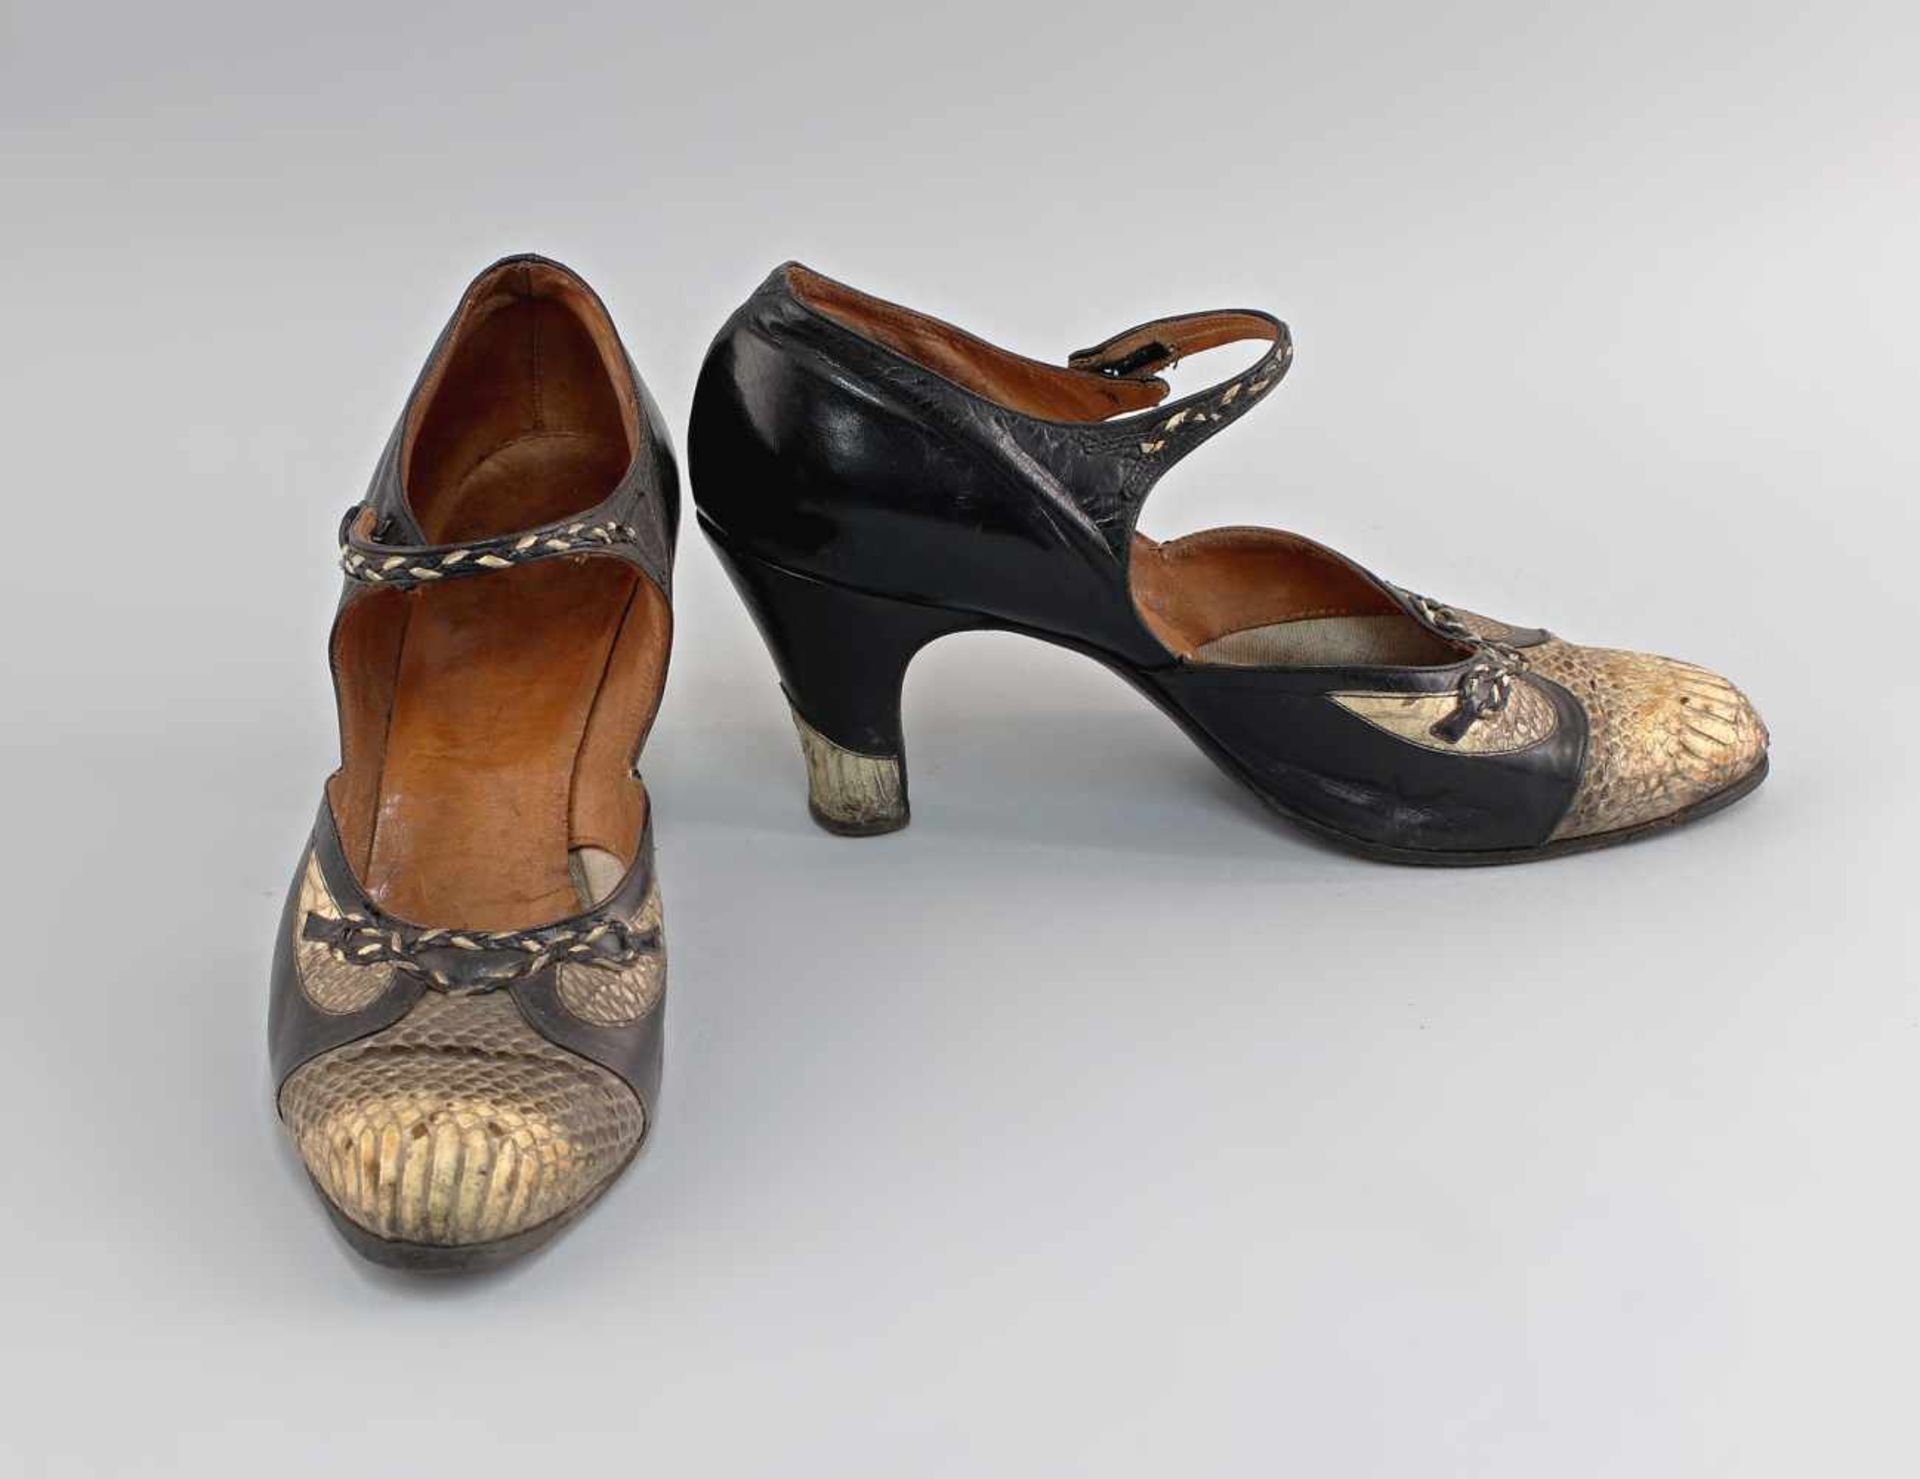 Damenschuhe Schlangenlederum 1930/40, spitz zulaufende Pumps aus Schlangenleder, Ledersohle. - Bild 2 aus 3